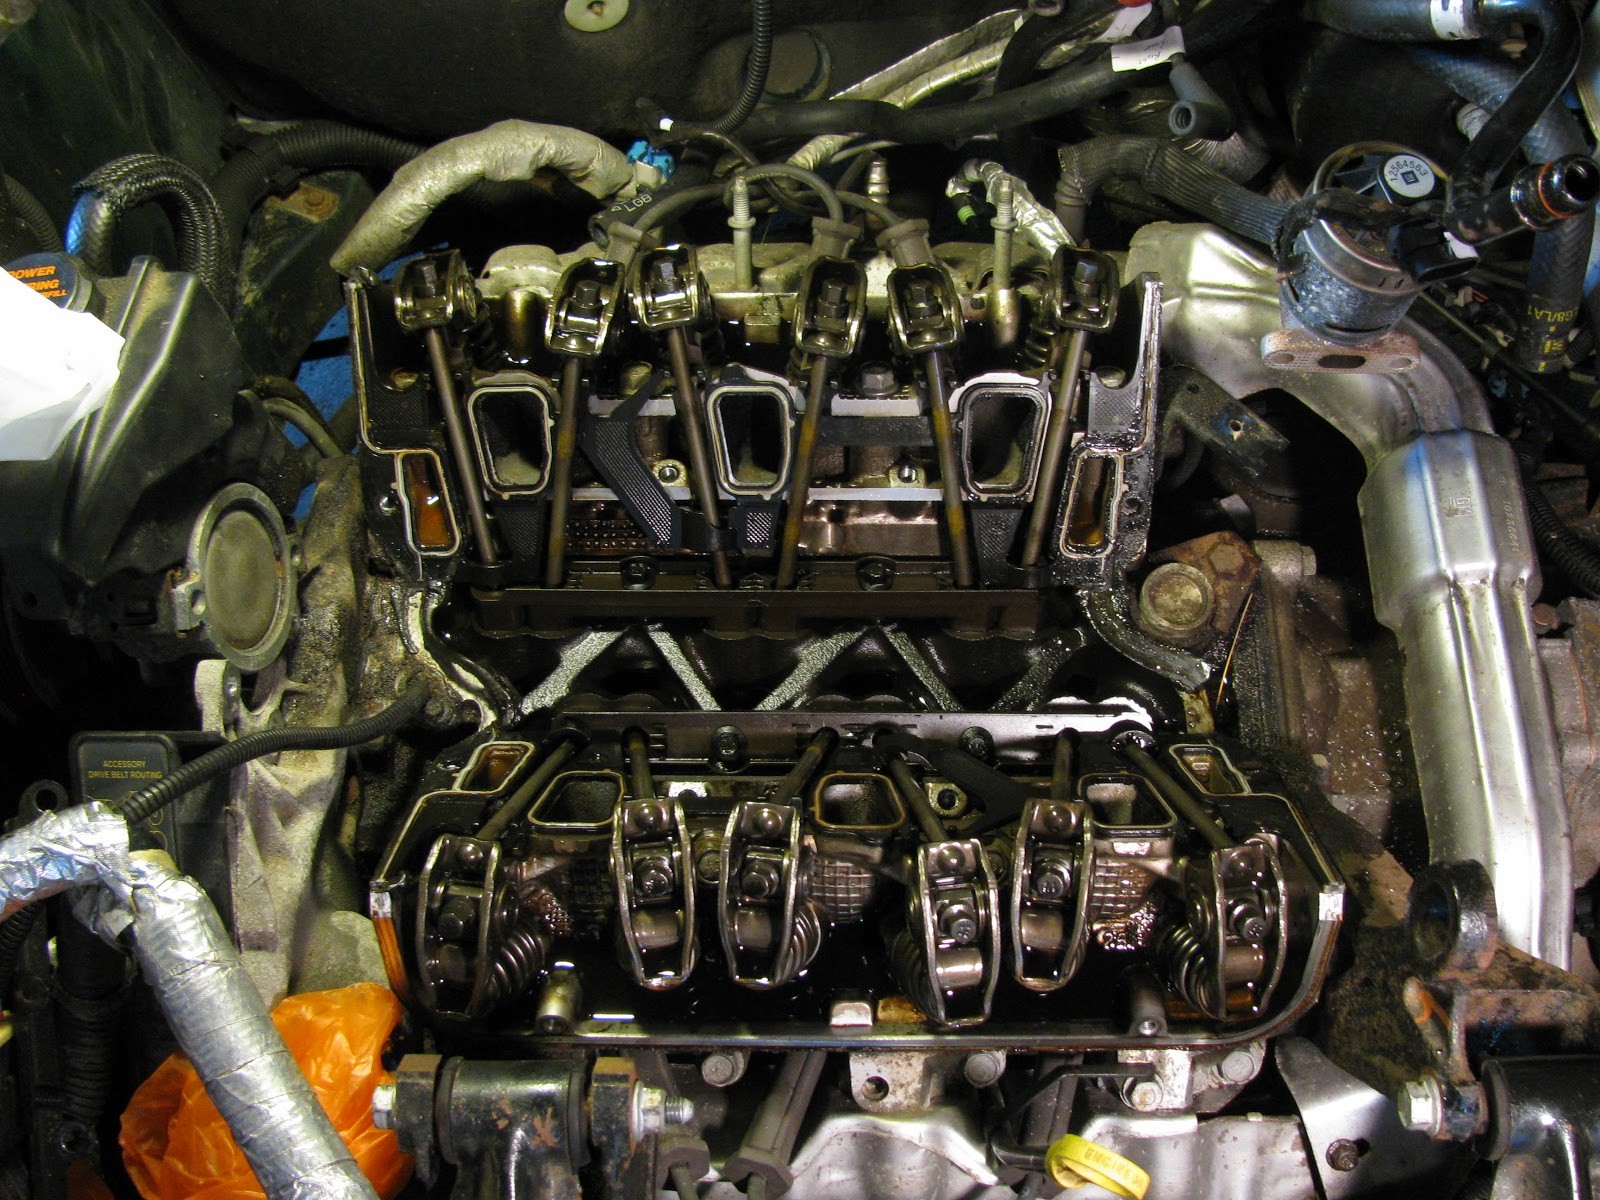 3100 Sfi V6 Engine Diagram the original Mechanic 3 1l Engine Gm Replacing Intake Manifold Of 3100 Sfi V6 Engine Diagram